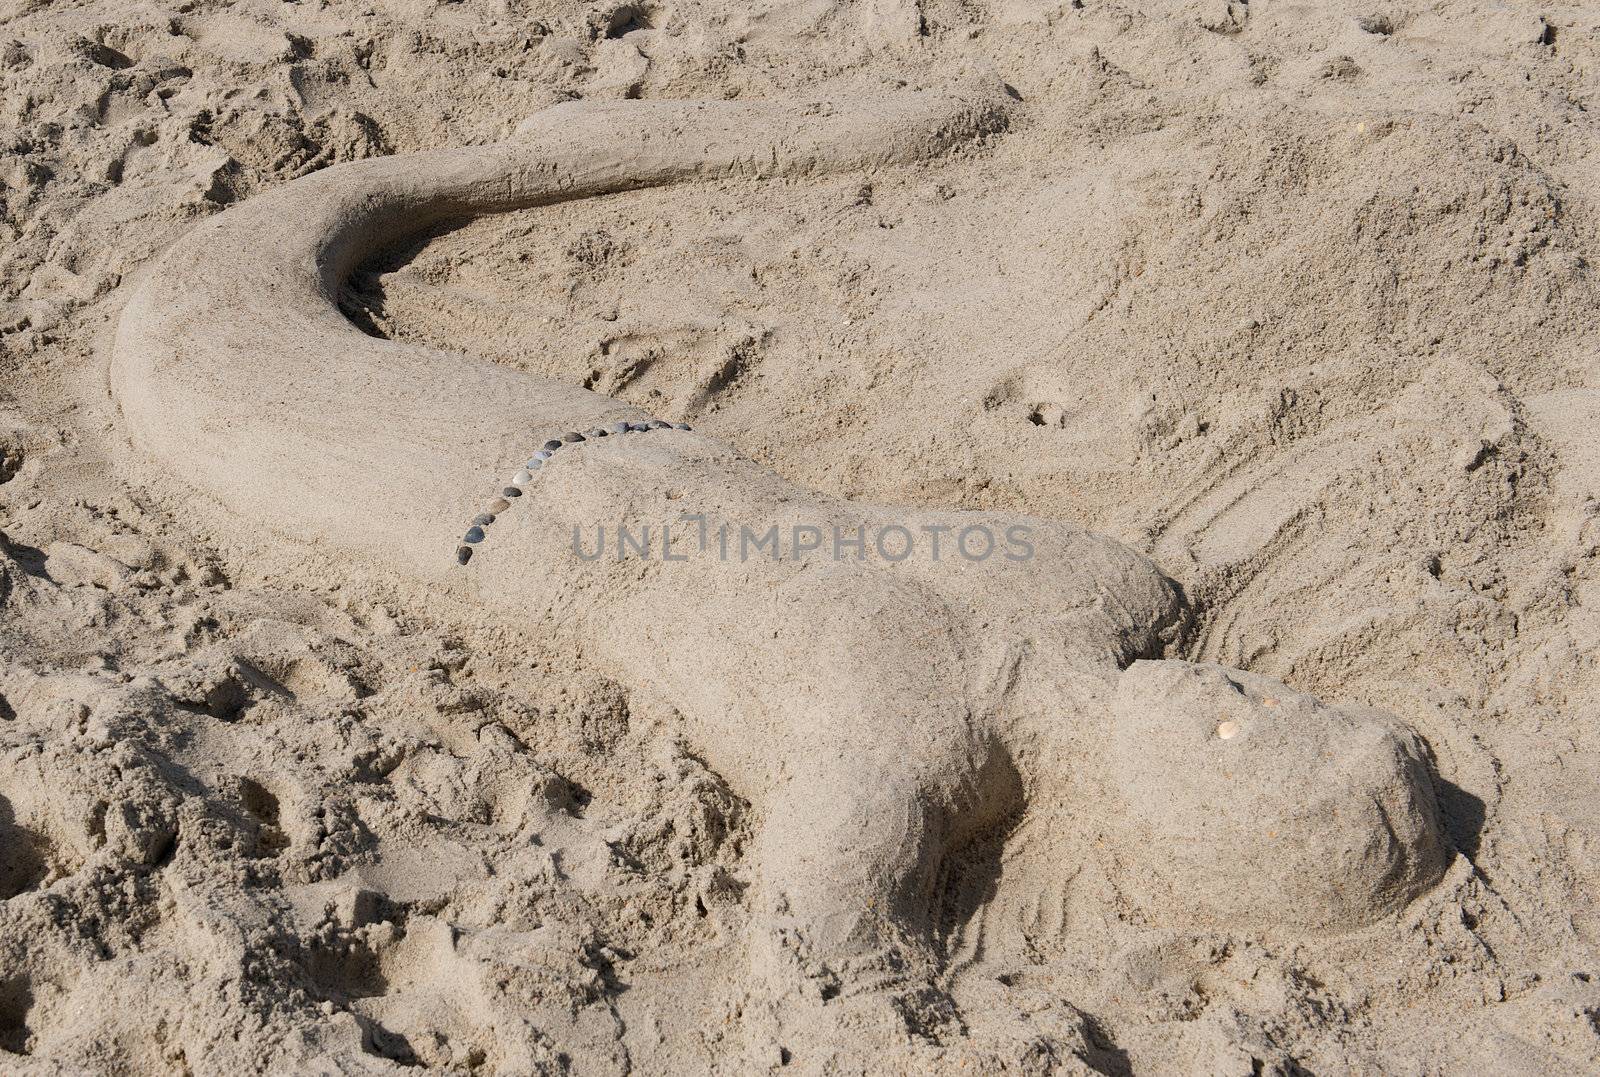 Sand sculpture of a merman by dmvphotos